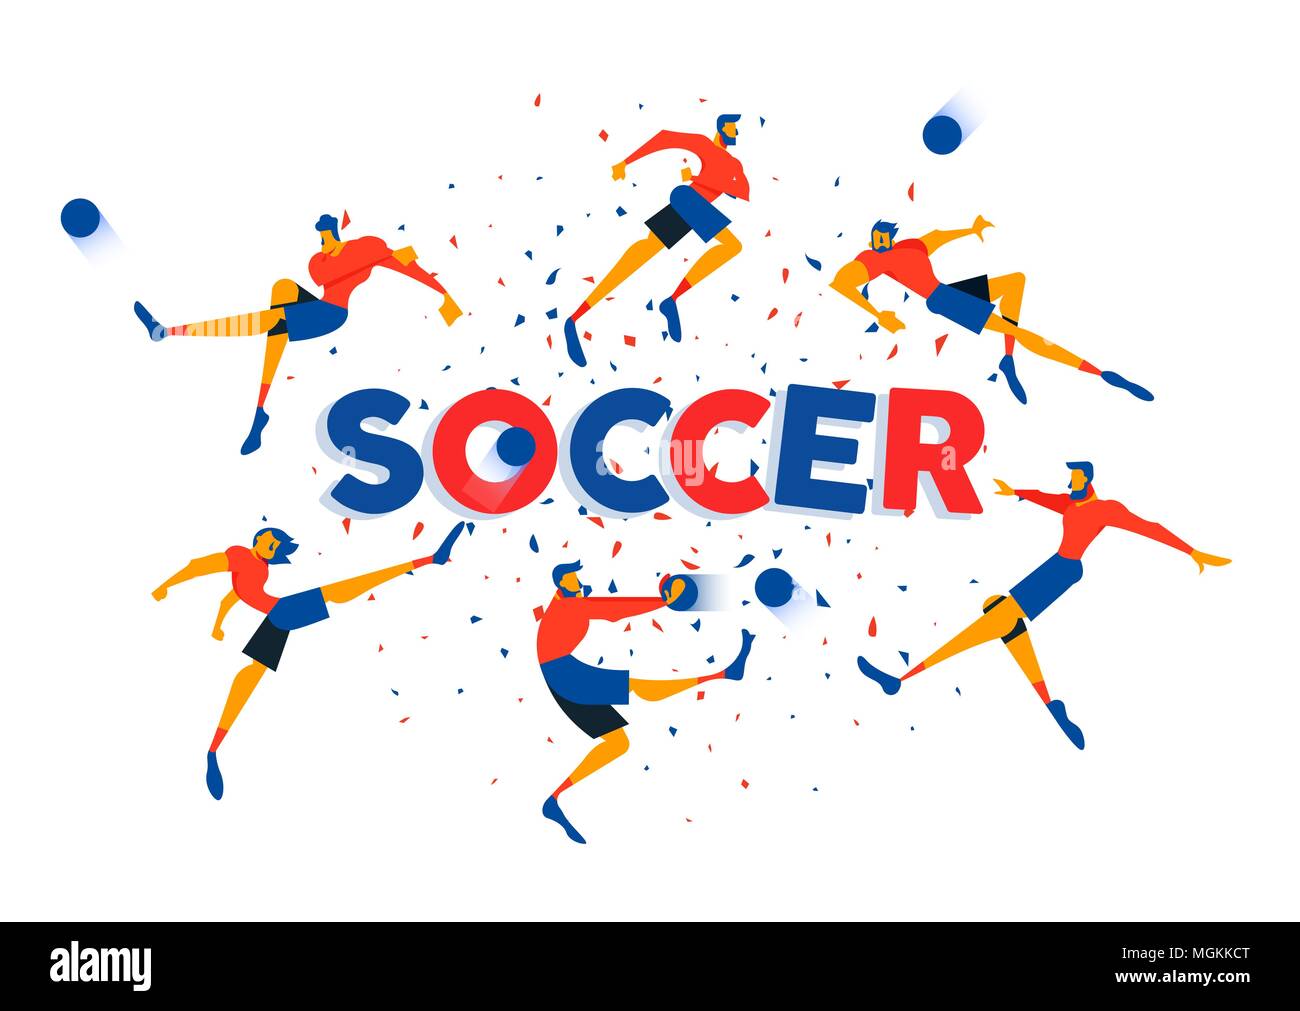 L'équipe de soccer player illustration pour le jeu spécial. Célébration coloré fond confettis avec typographie citer et des athlètes de football. Vecteur EPS10. Illustration de Vecteur